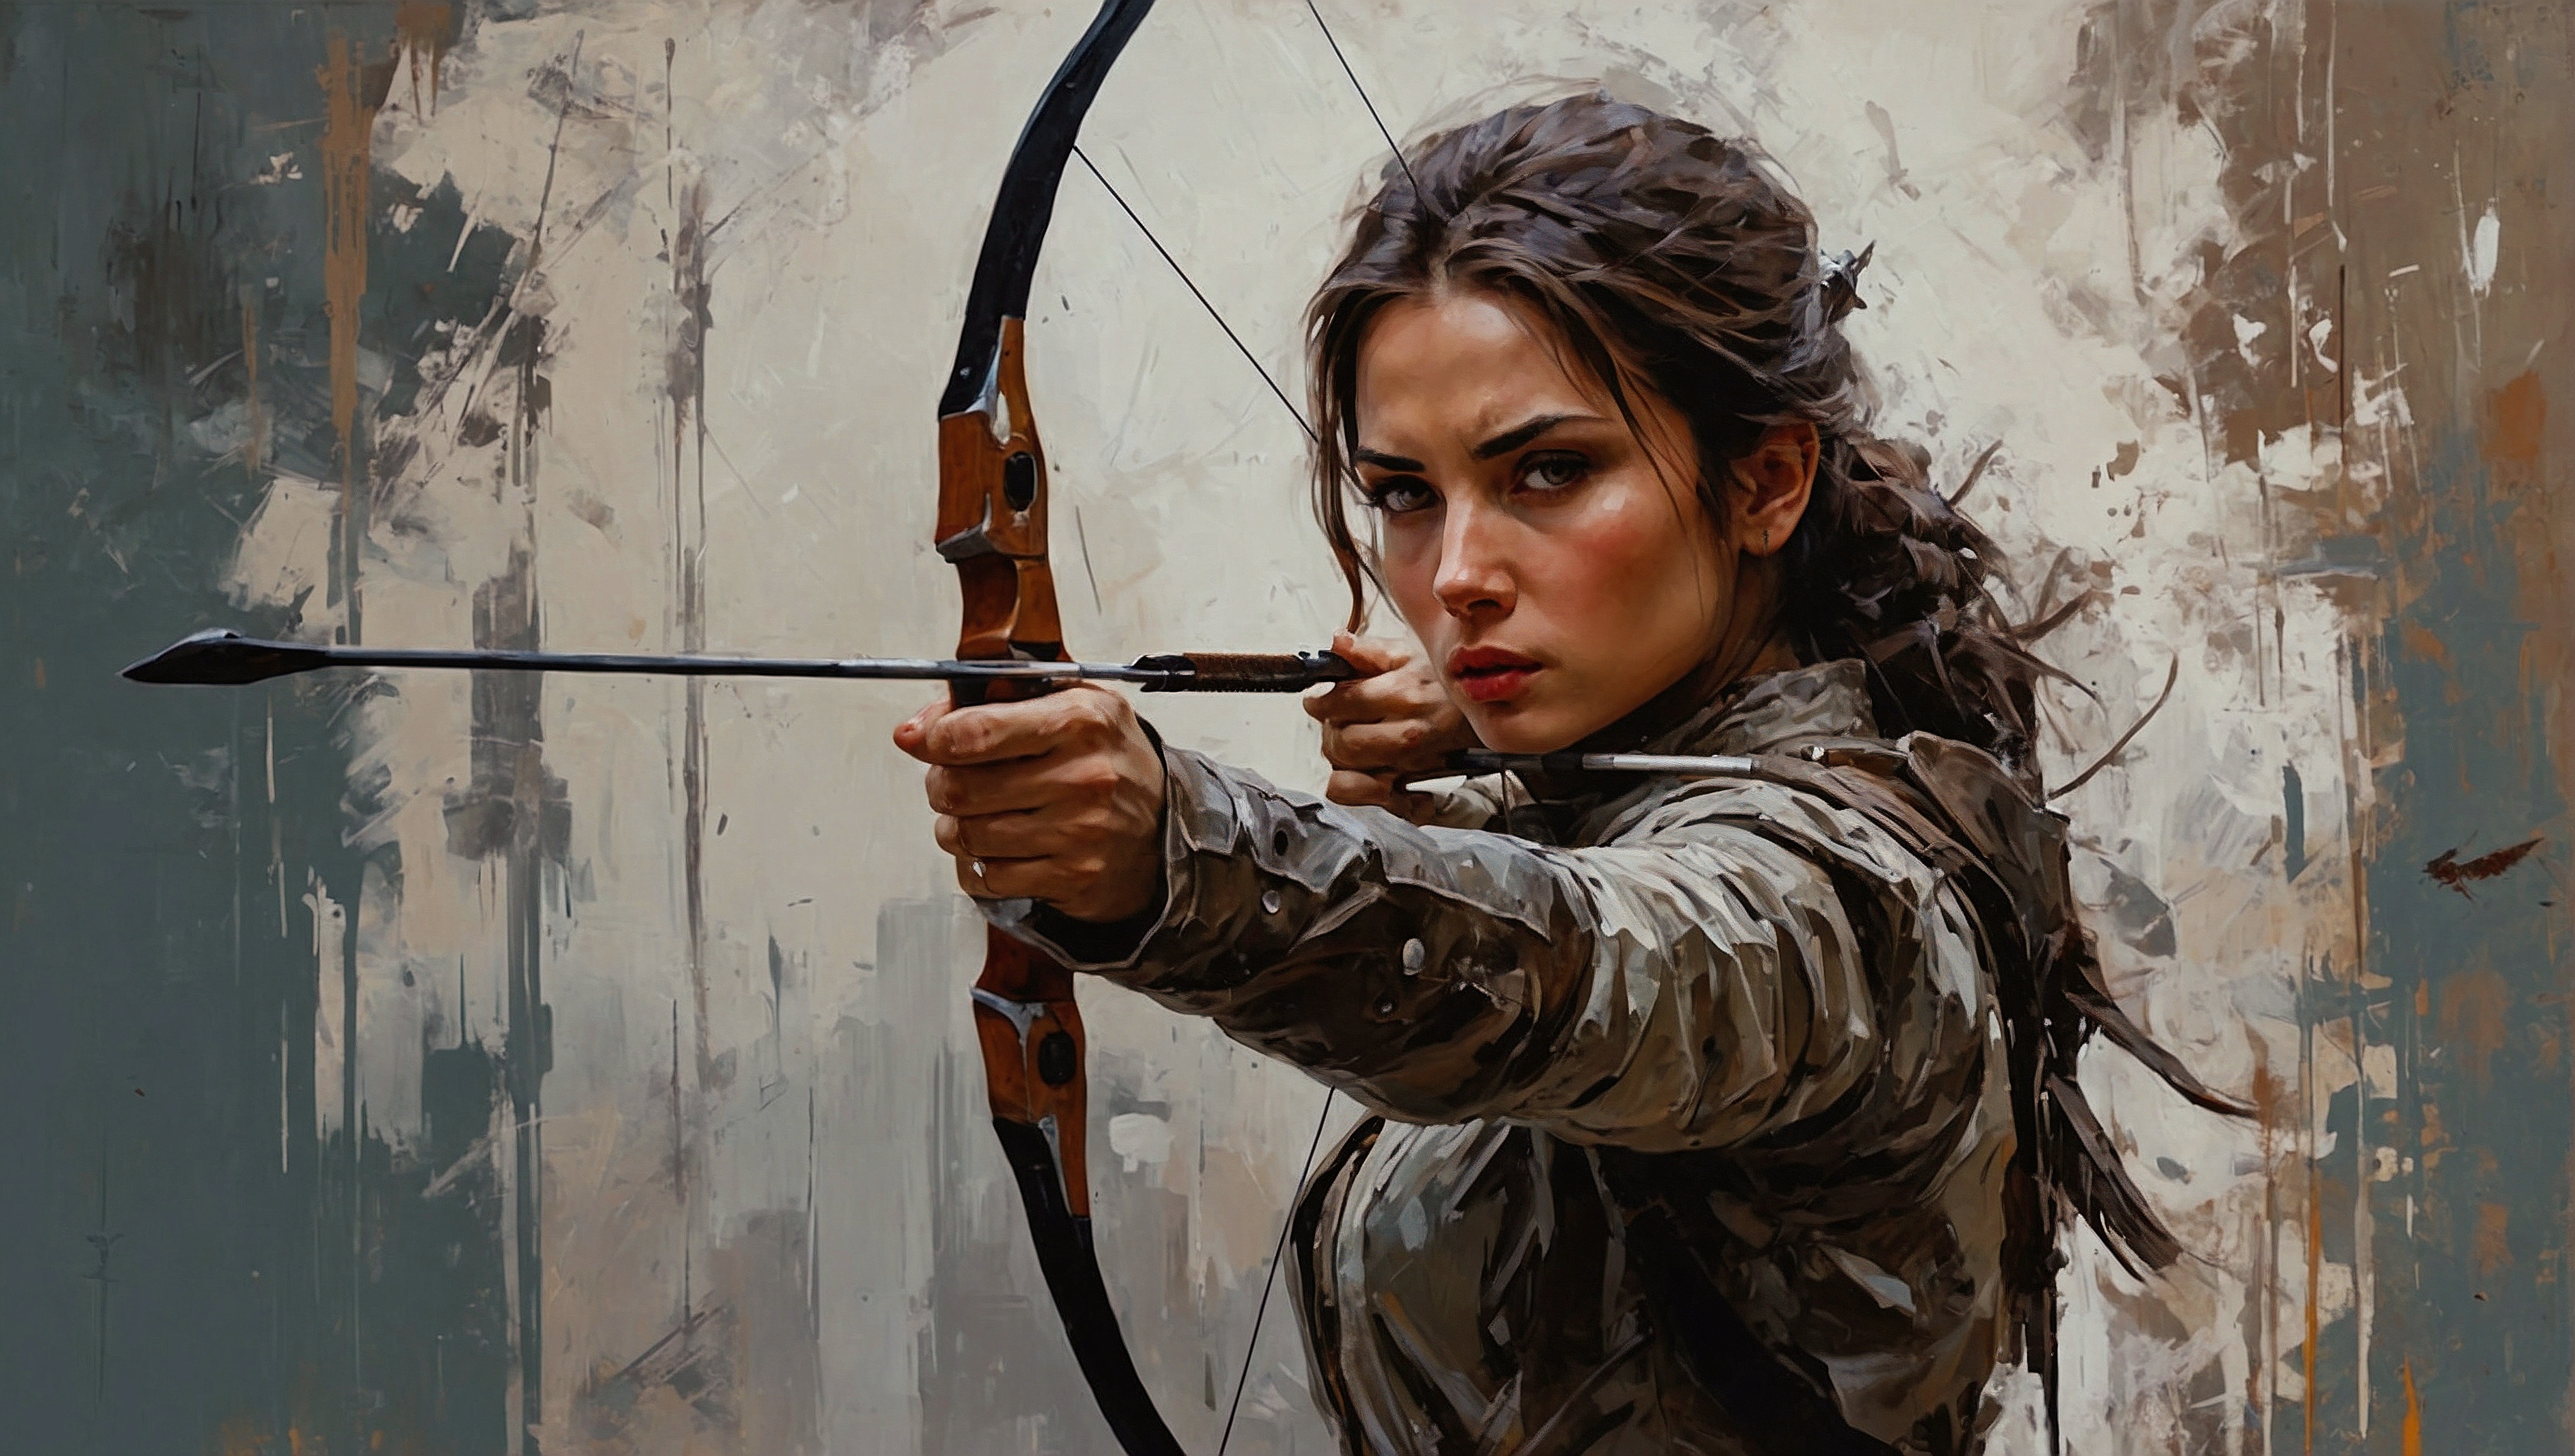 一幅一手持刀、一手持箭的妇女瞄准弓箭的画作